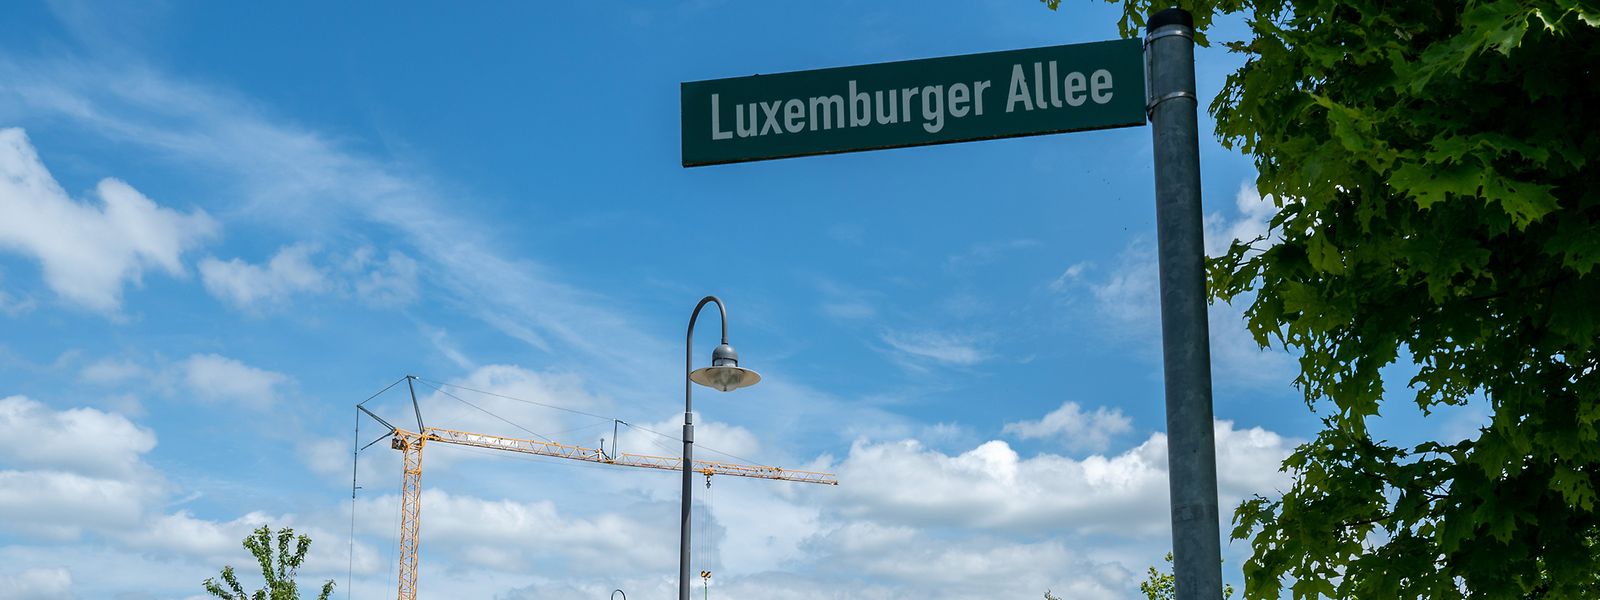 Für Luxemburger Verhältnisse günstiges Bauland gibt es noch auf der deutschen Seite der Mosel. Die zahlungskräftigen Kunden aus dem Großherzogtum werden von den dortigen Immobiliengesellschaften stark umworben.